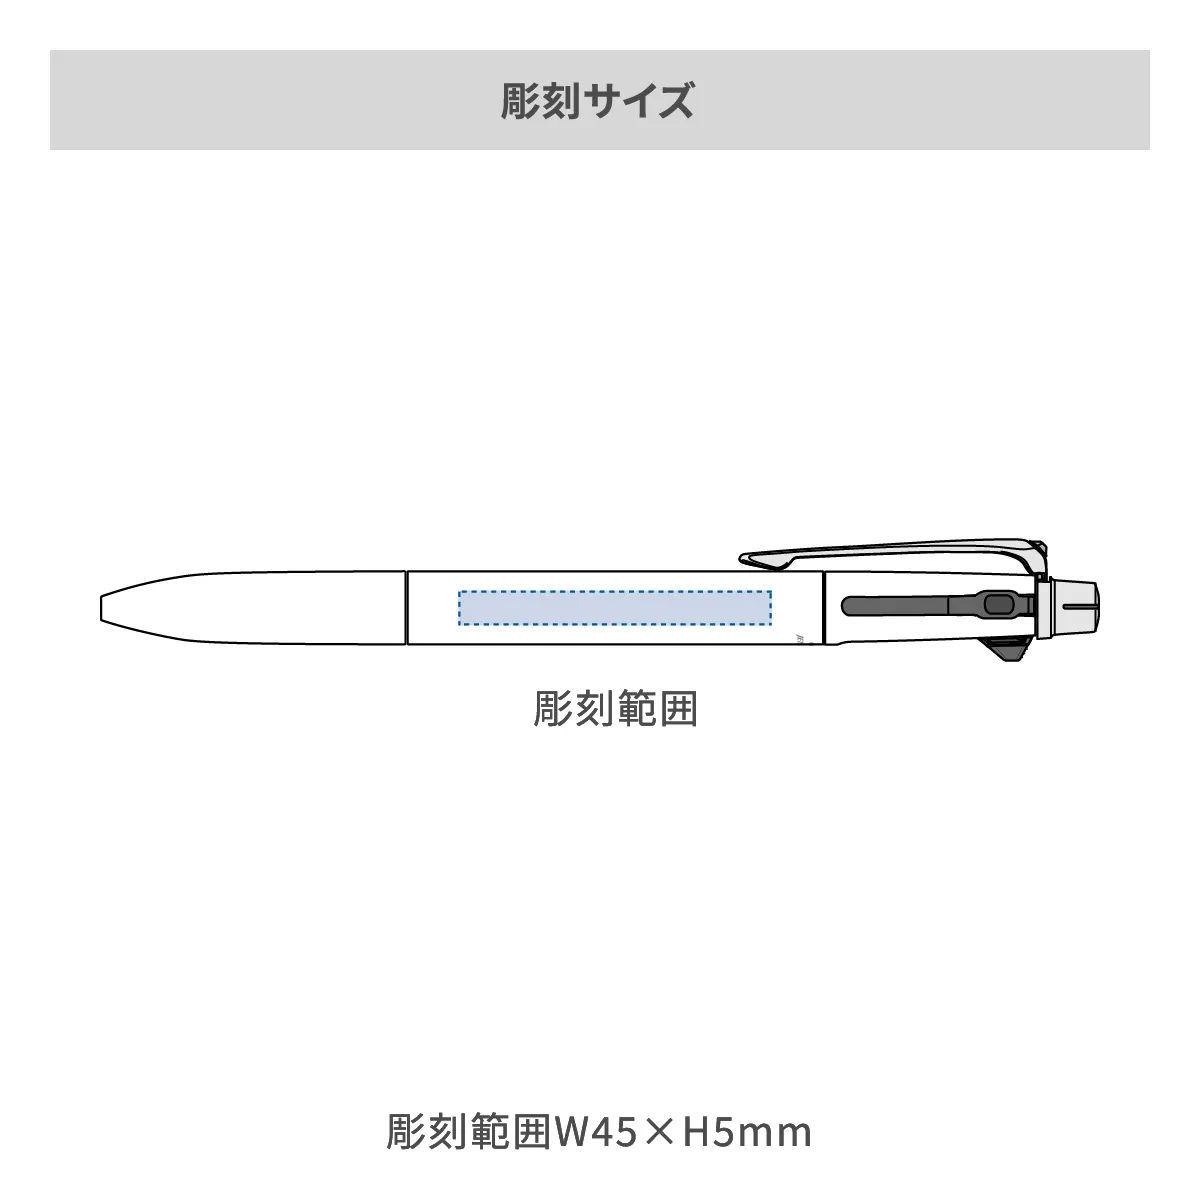 【短納期】三菱鉛筆 ジェットストリーム プライム 多機能ペン 2&1 0.5mm【多機能ペン / レーザー彫刻】 画像2